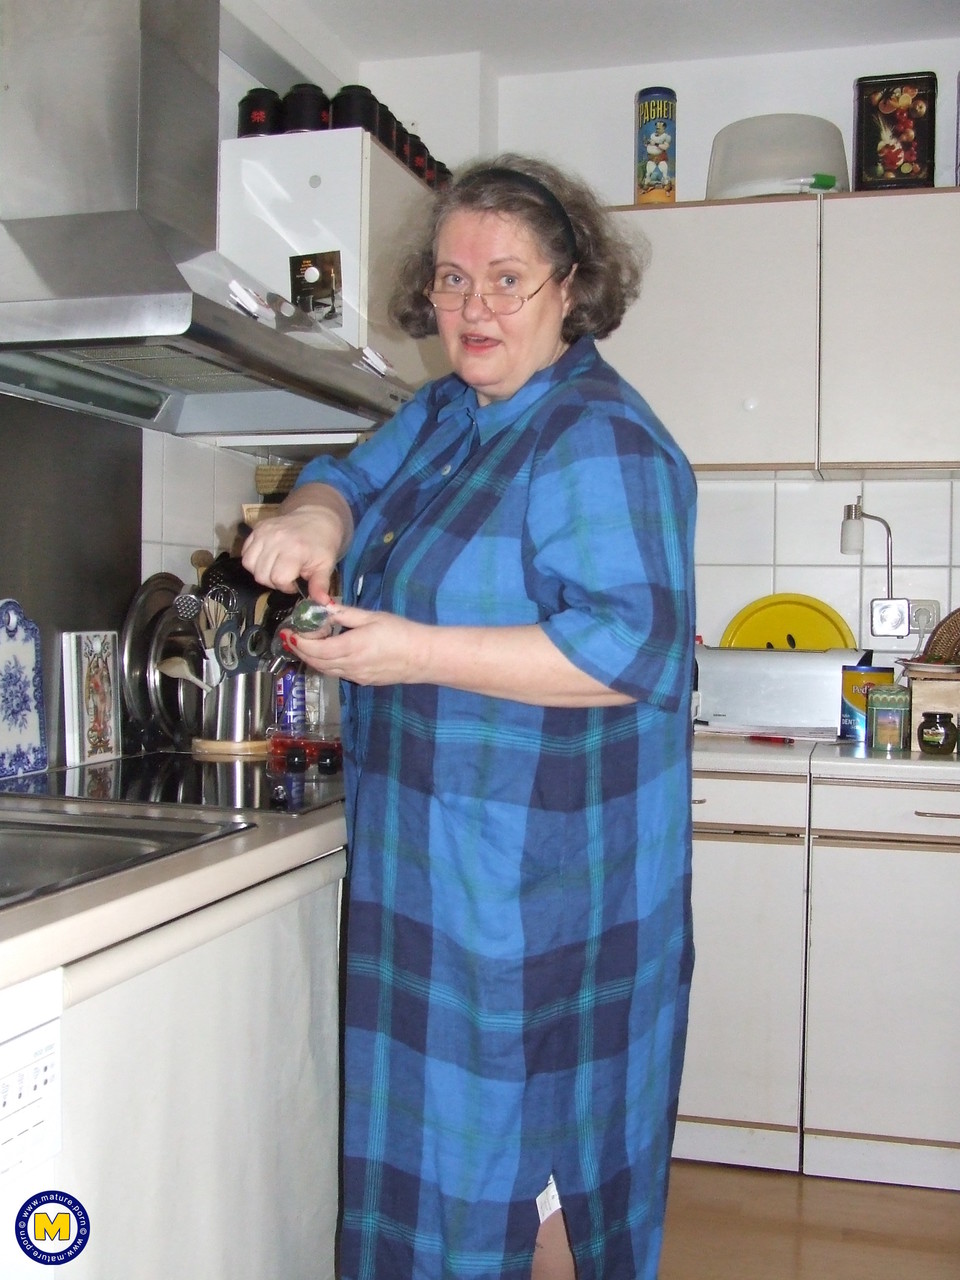 Fat mature housewife Birgid masturbates with a cucumber in the kitchen foto porno #423883217 | Mature NL Pics, Birgid, Granny, porno ponsel